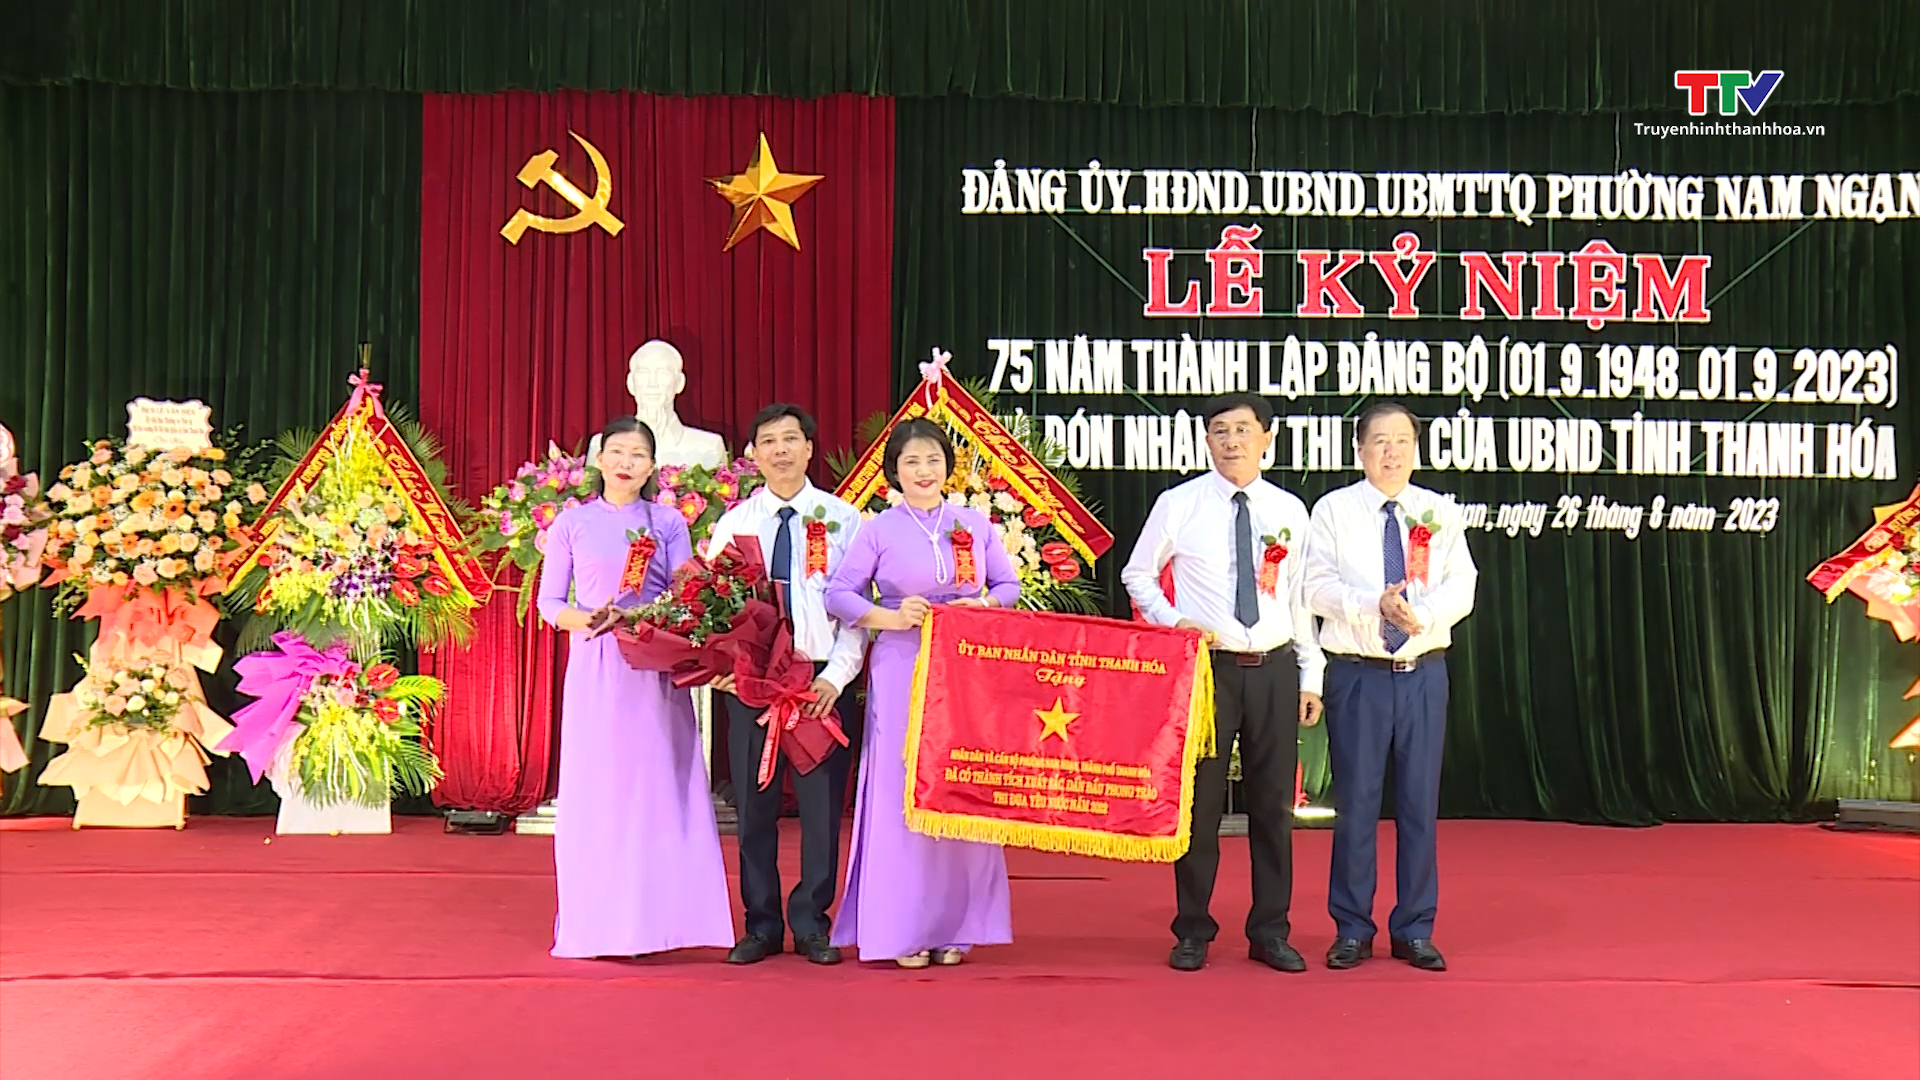 Tin tổng hợp hoạt động chính trị, kinh tế, văn hóa, xã hội trên địa bàn thành phố Thanh Hóa từ 23/8 - 30/8 - Ảnh 2.